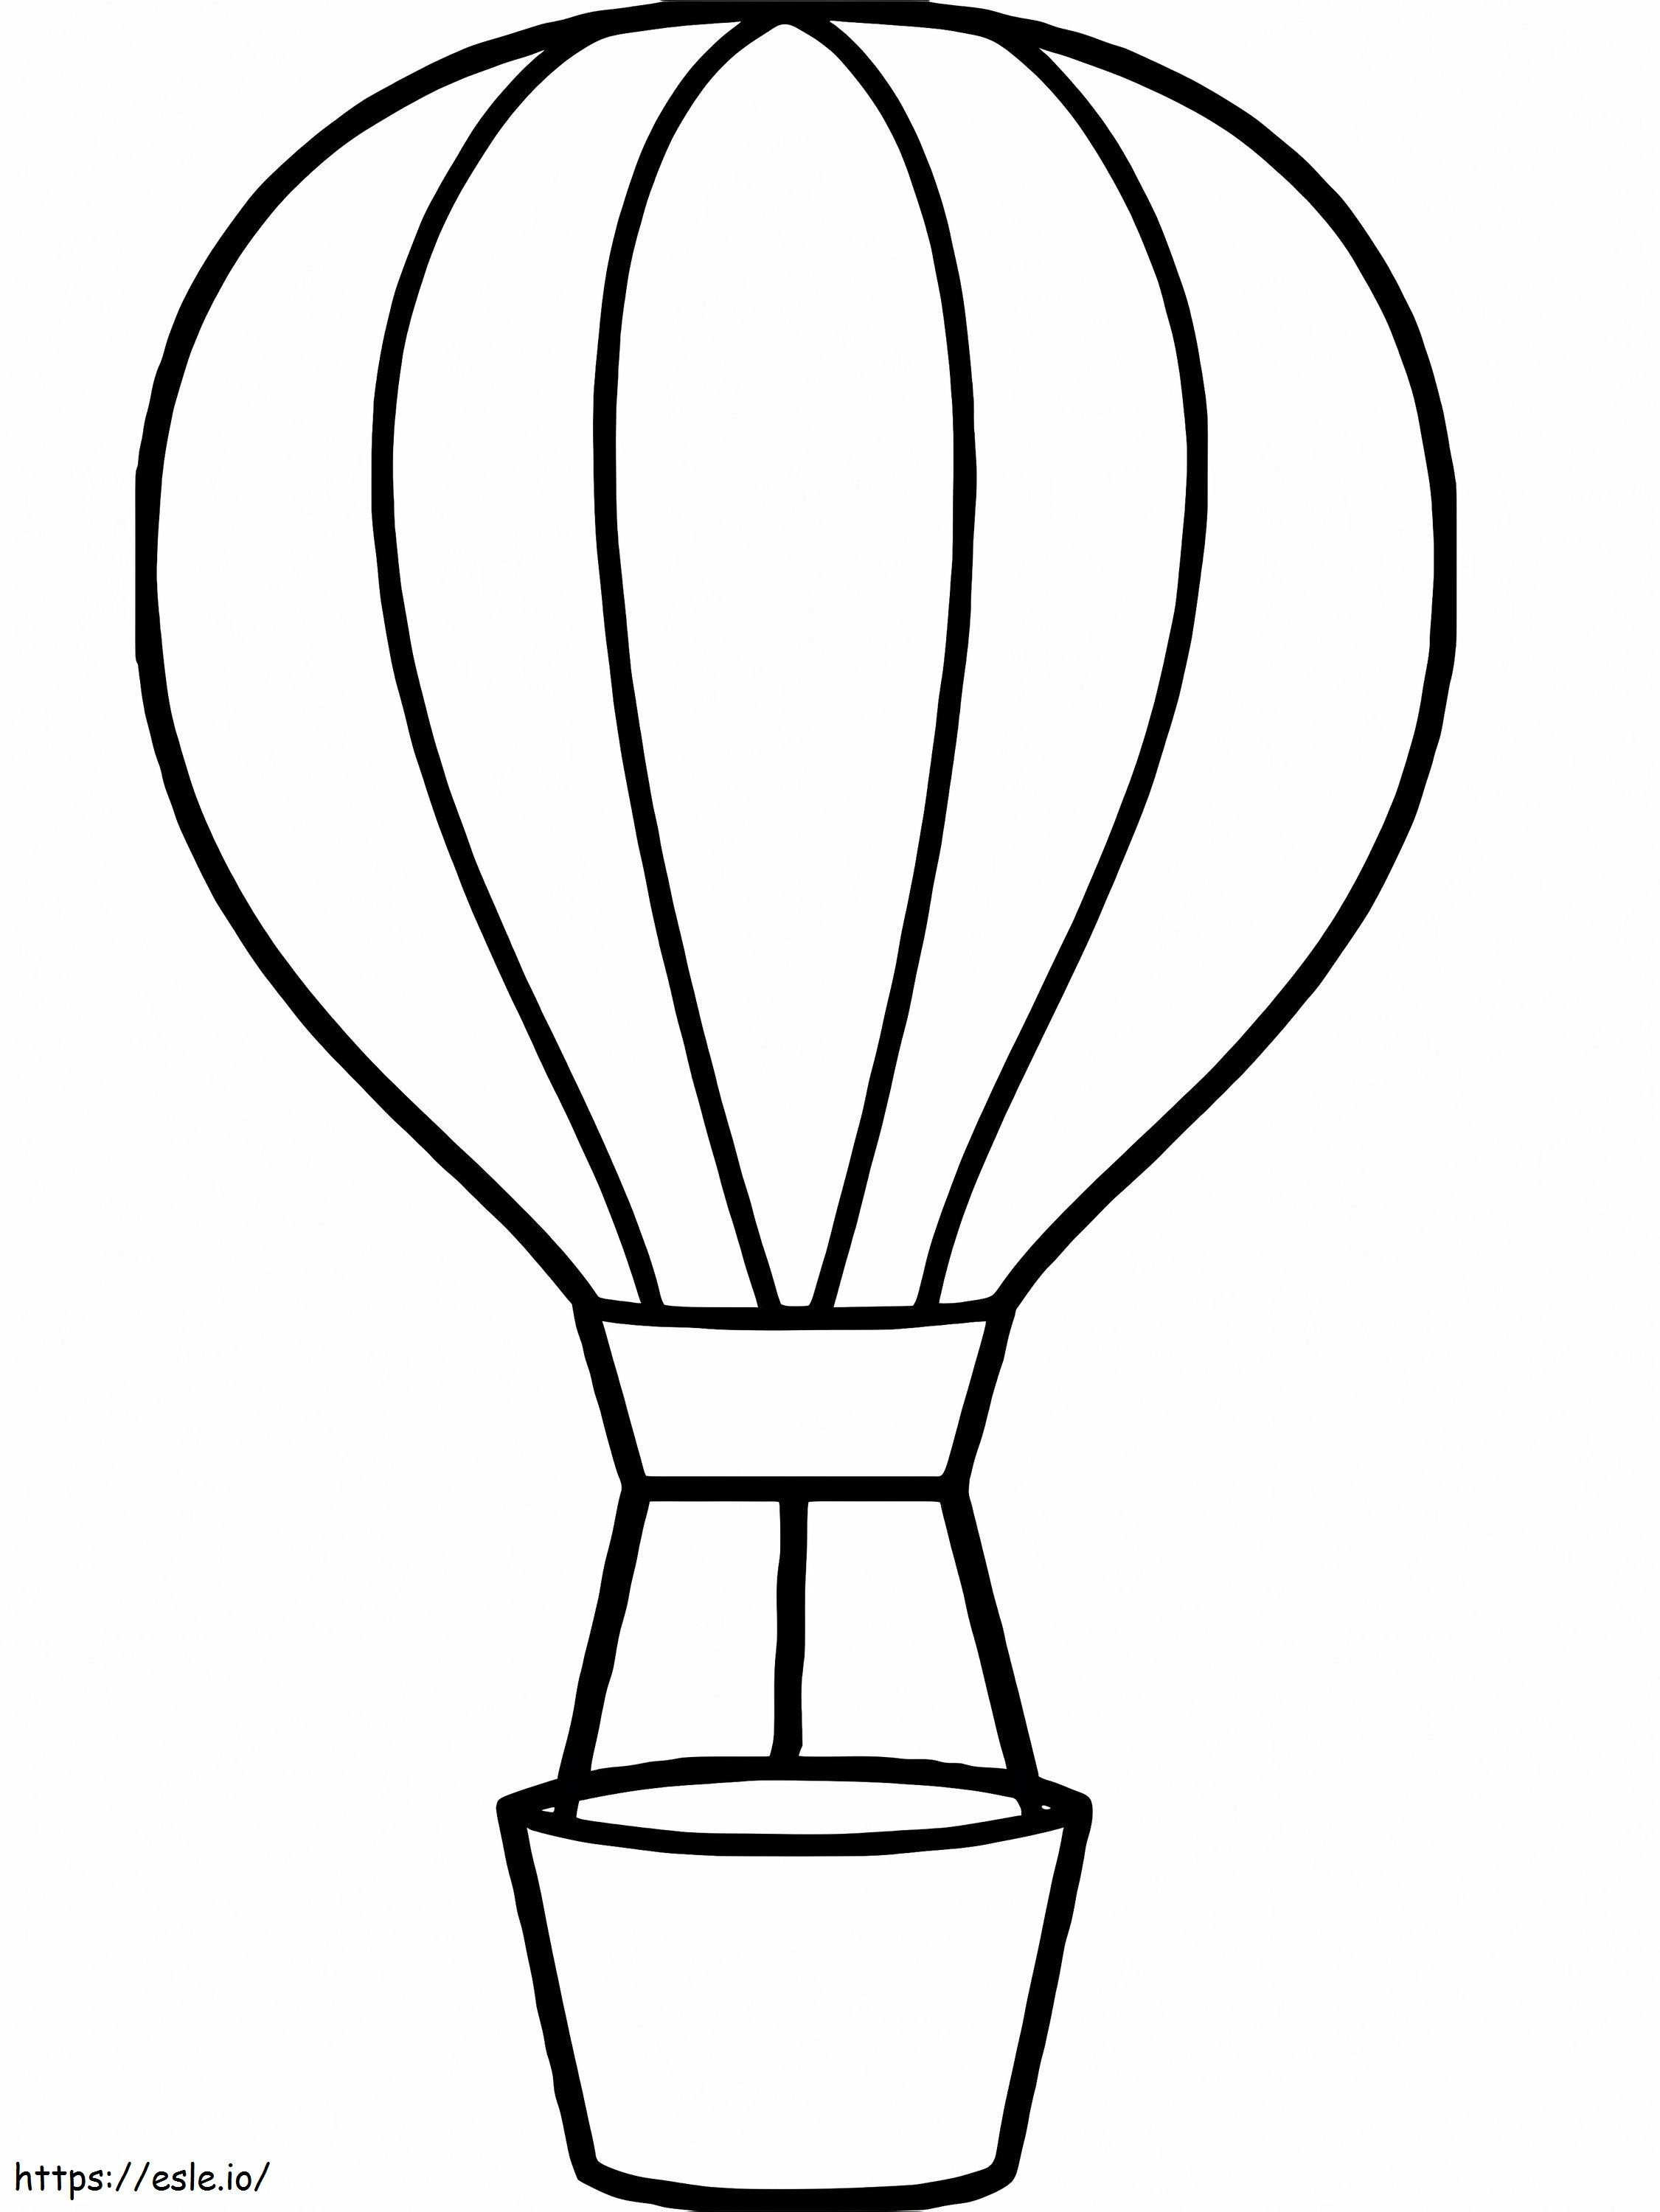 Balão de ar quente único 3 para colorir